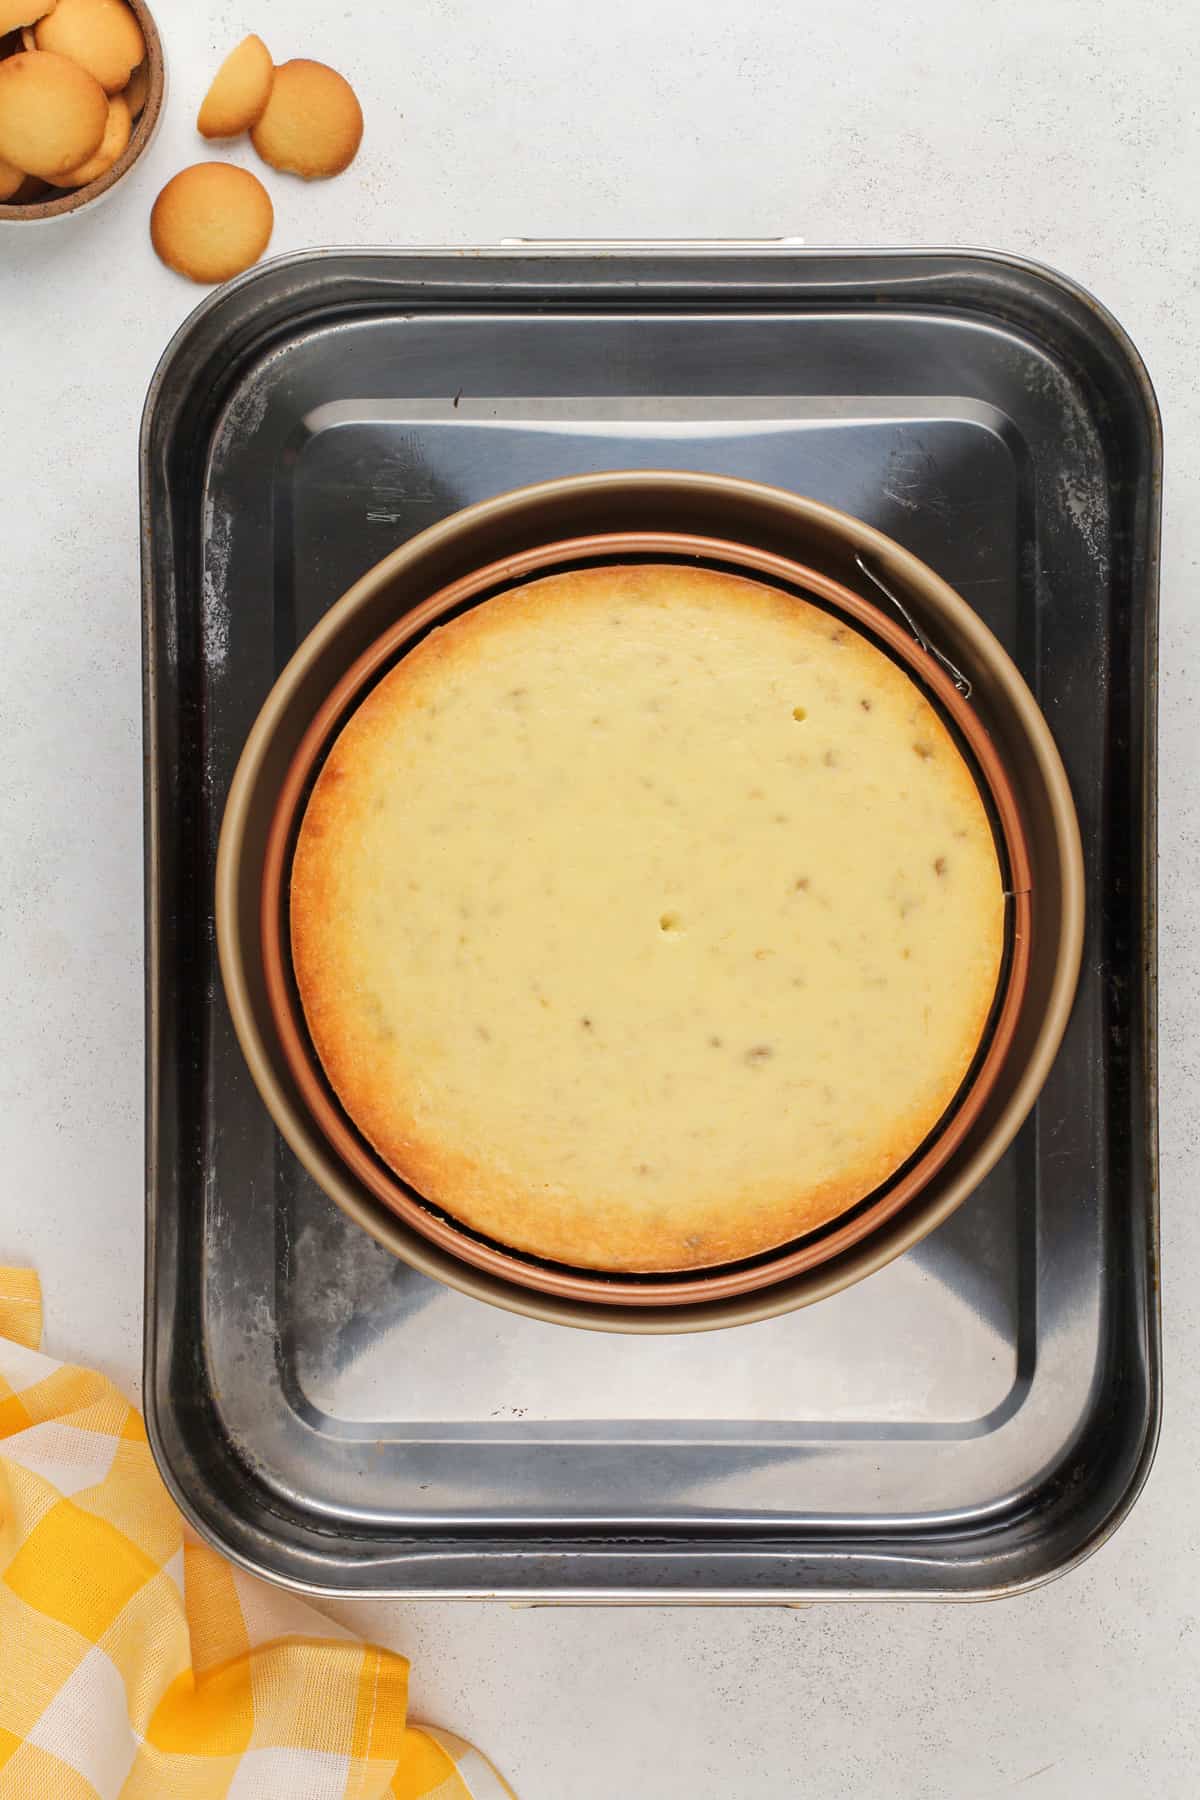 Baked banana pudding cheesecake in a roasting pan.